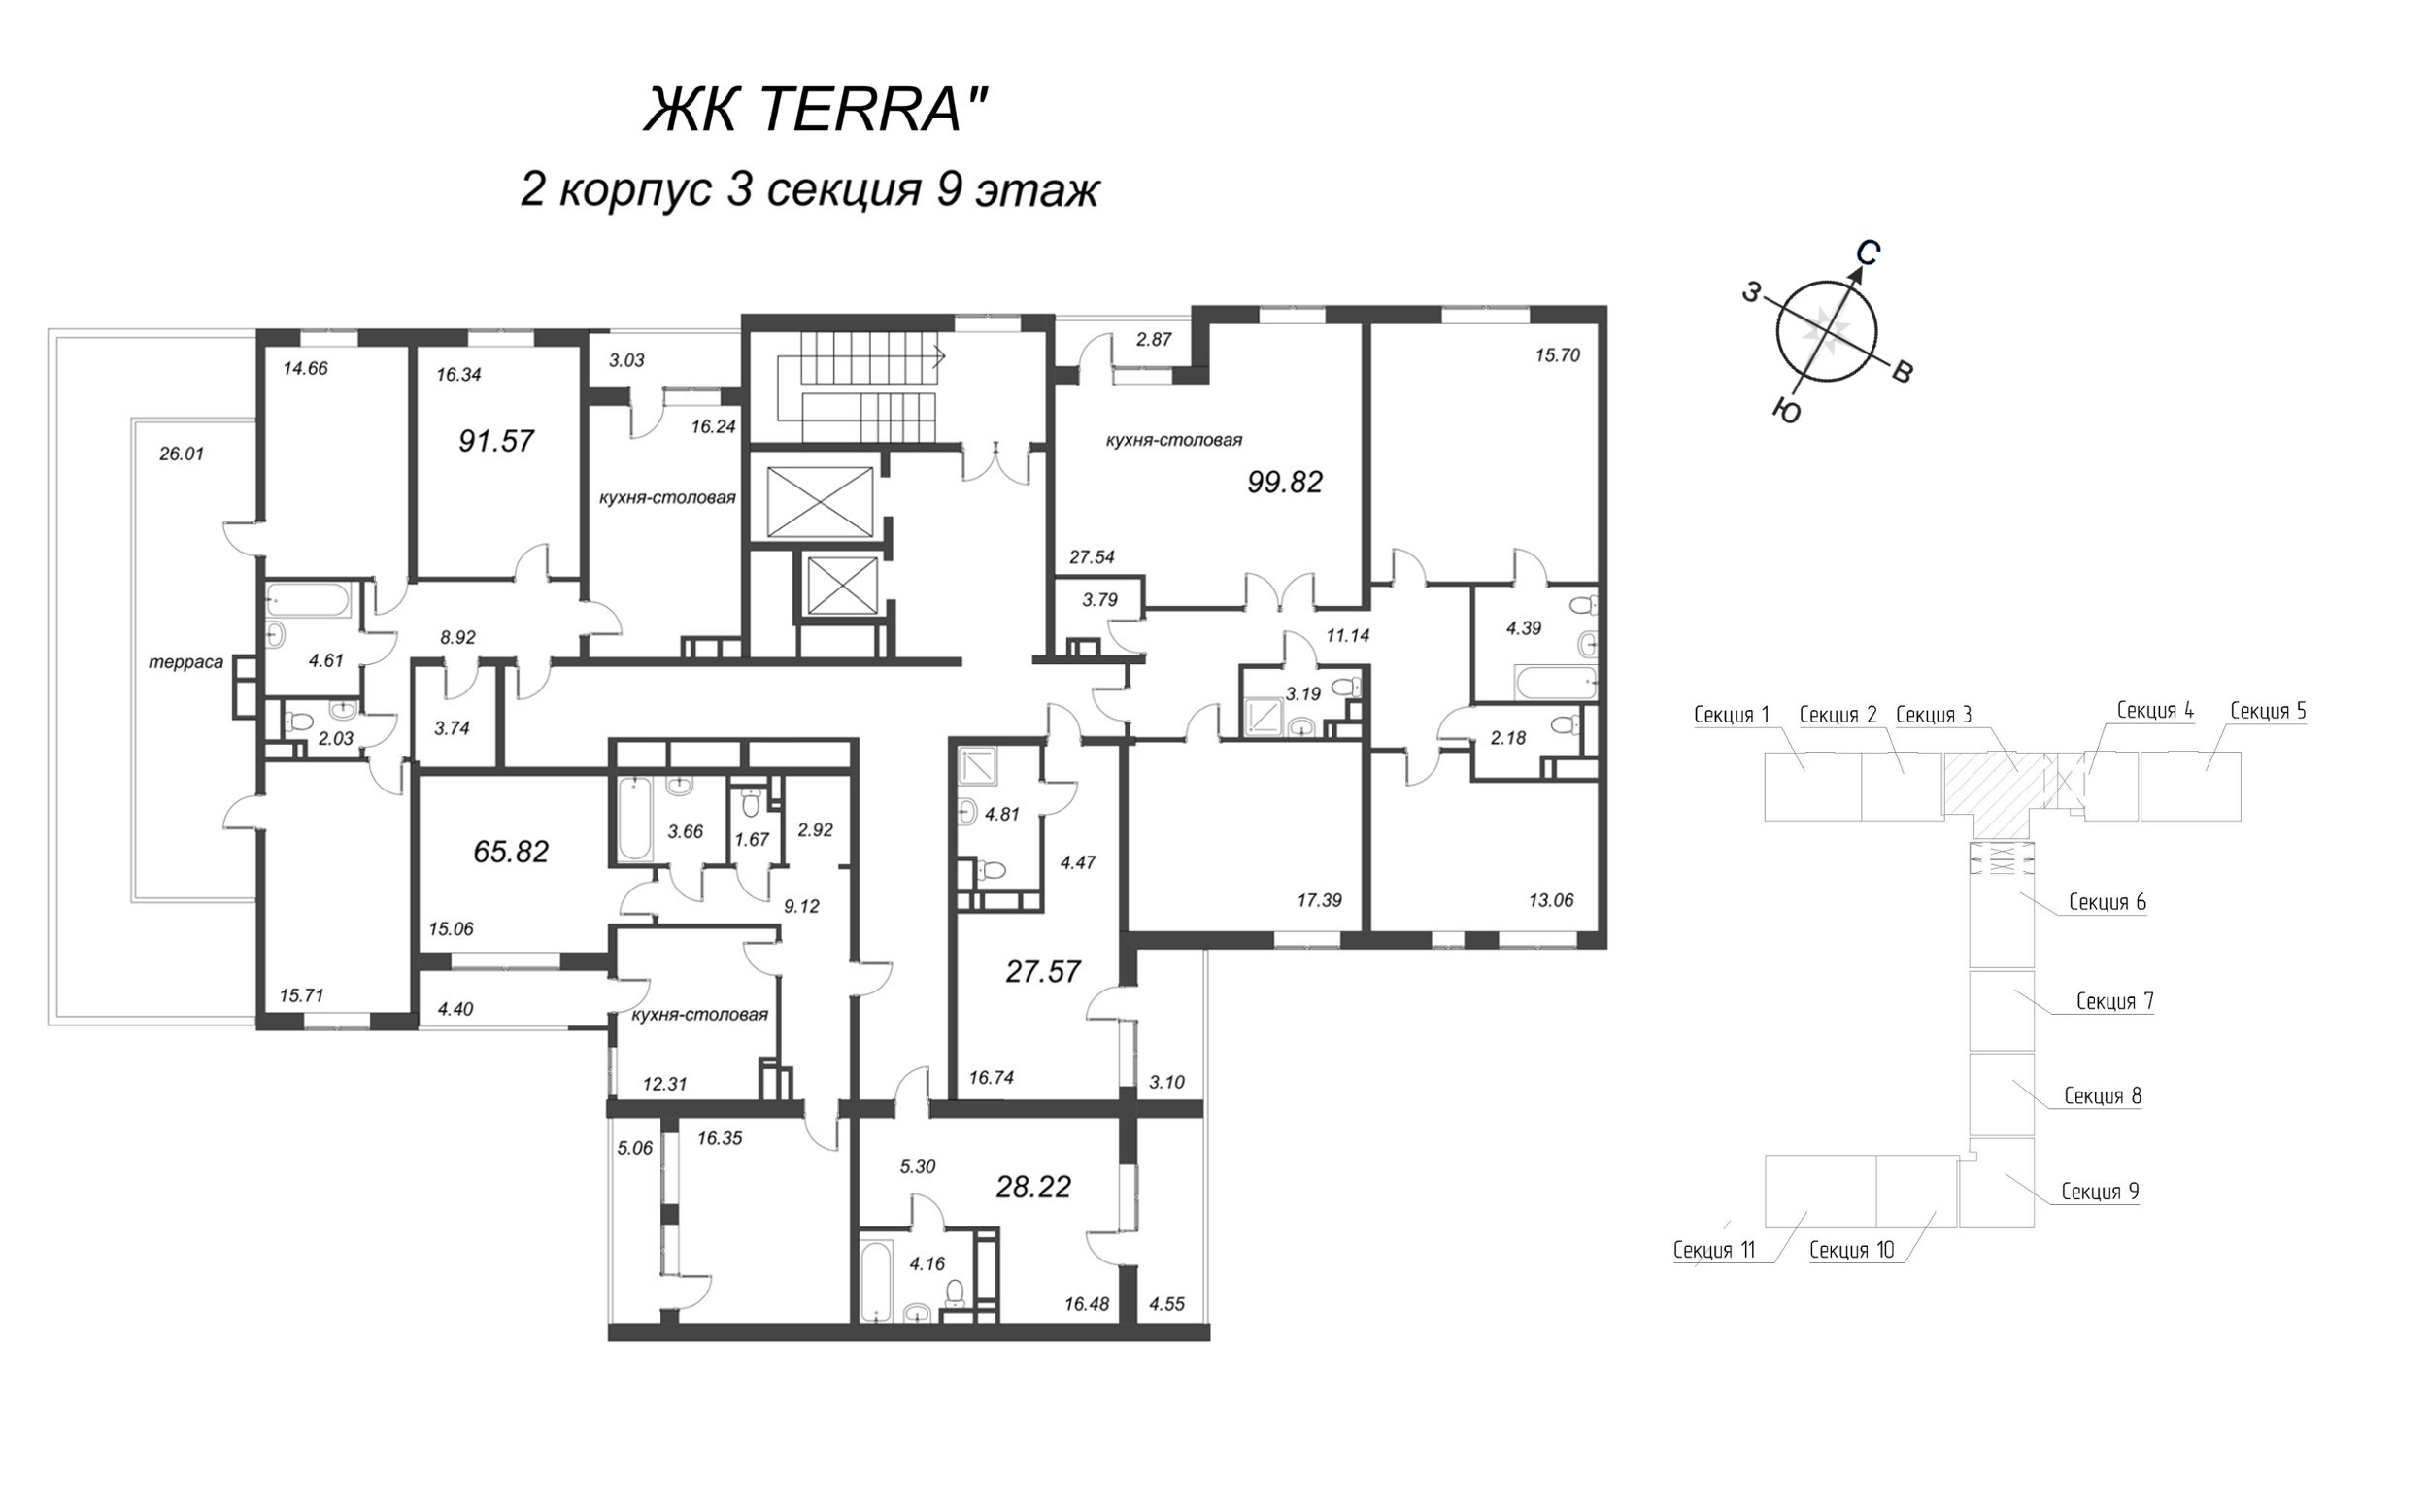 4-комнатная (Евро) квартира, 100 м² в ЖК "Terra" - планировка этажа